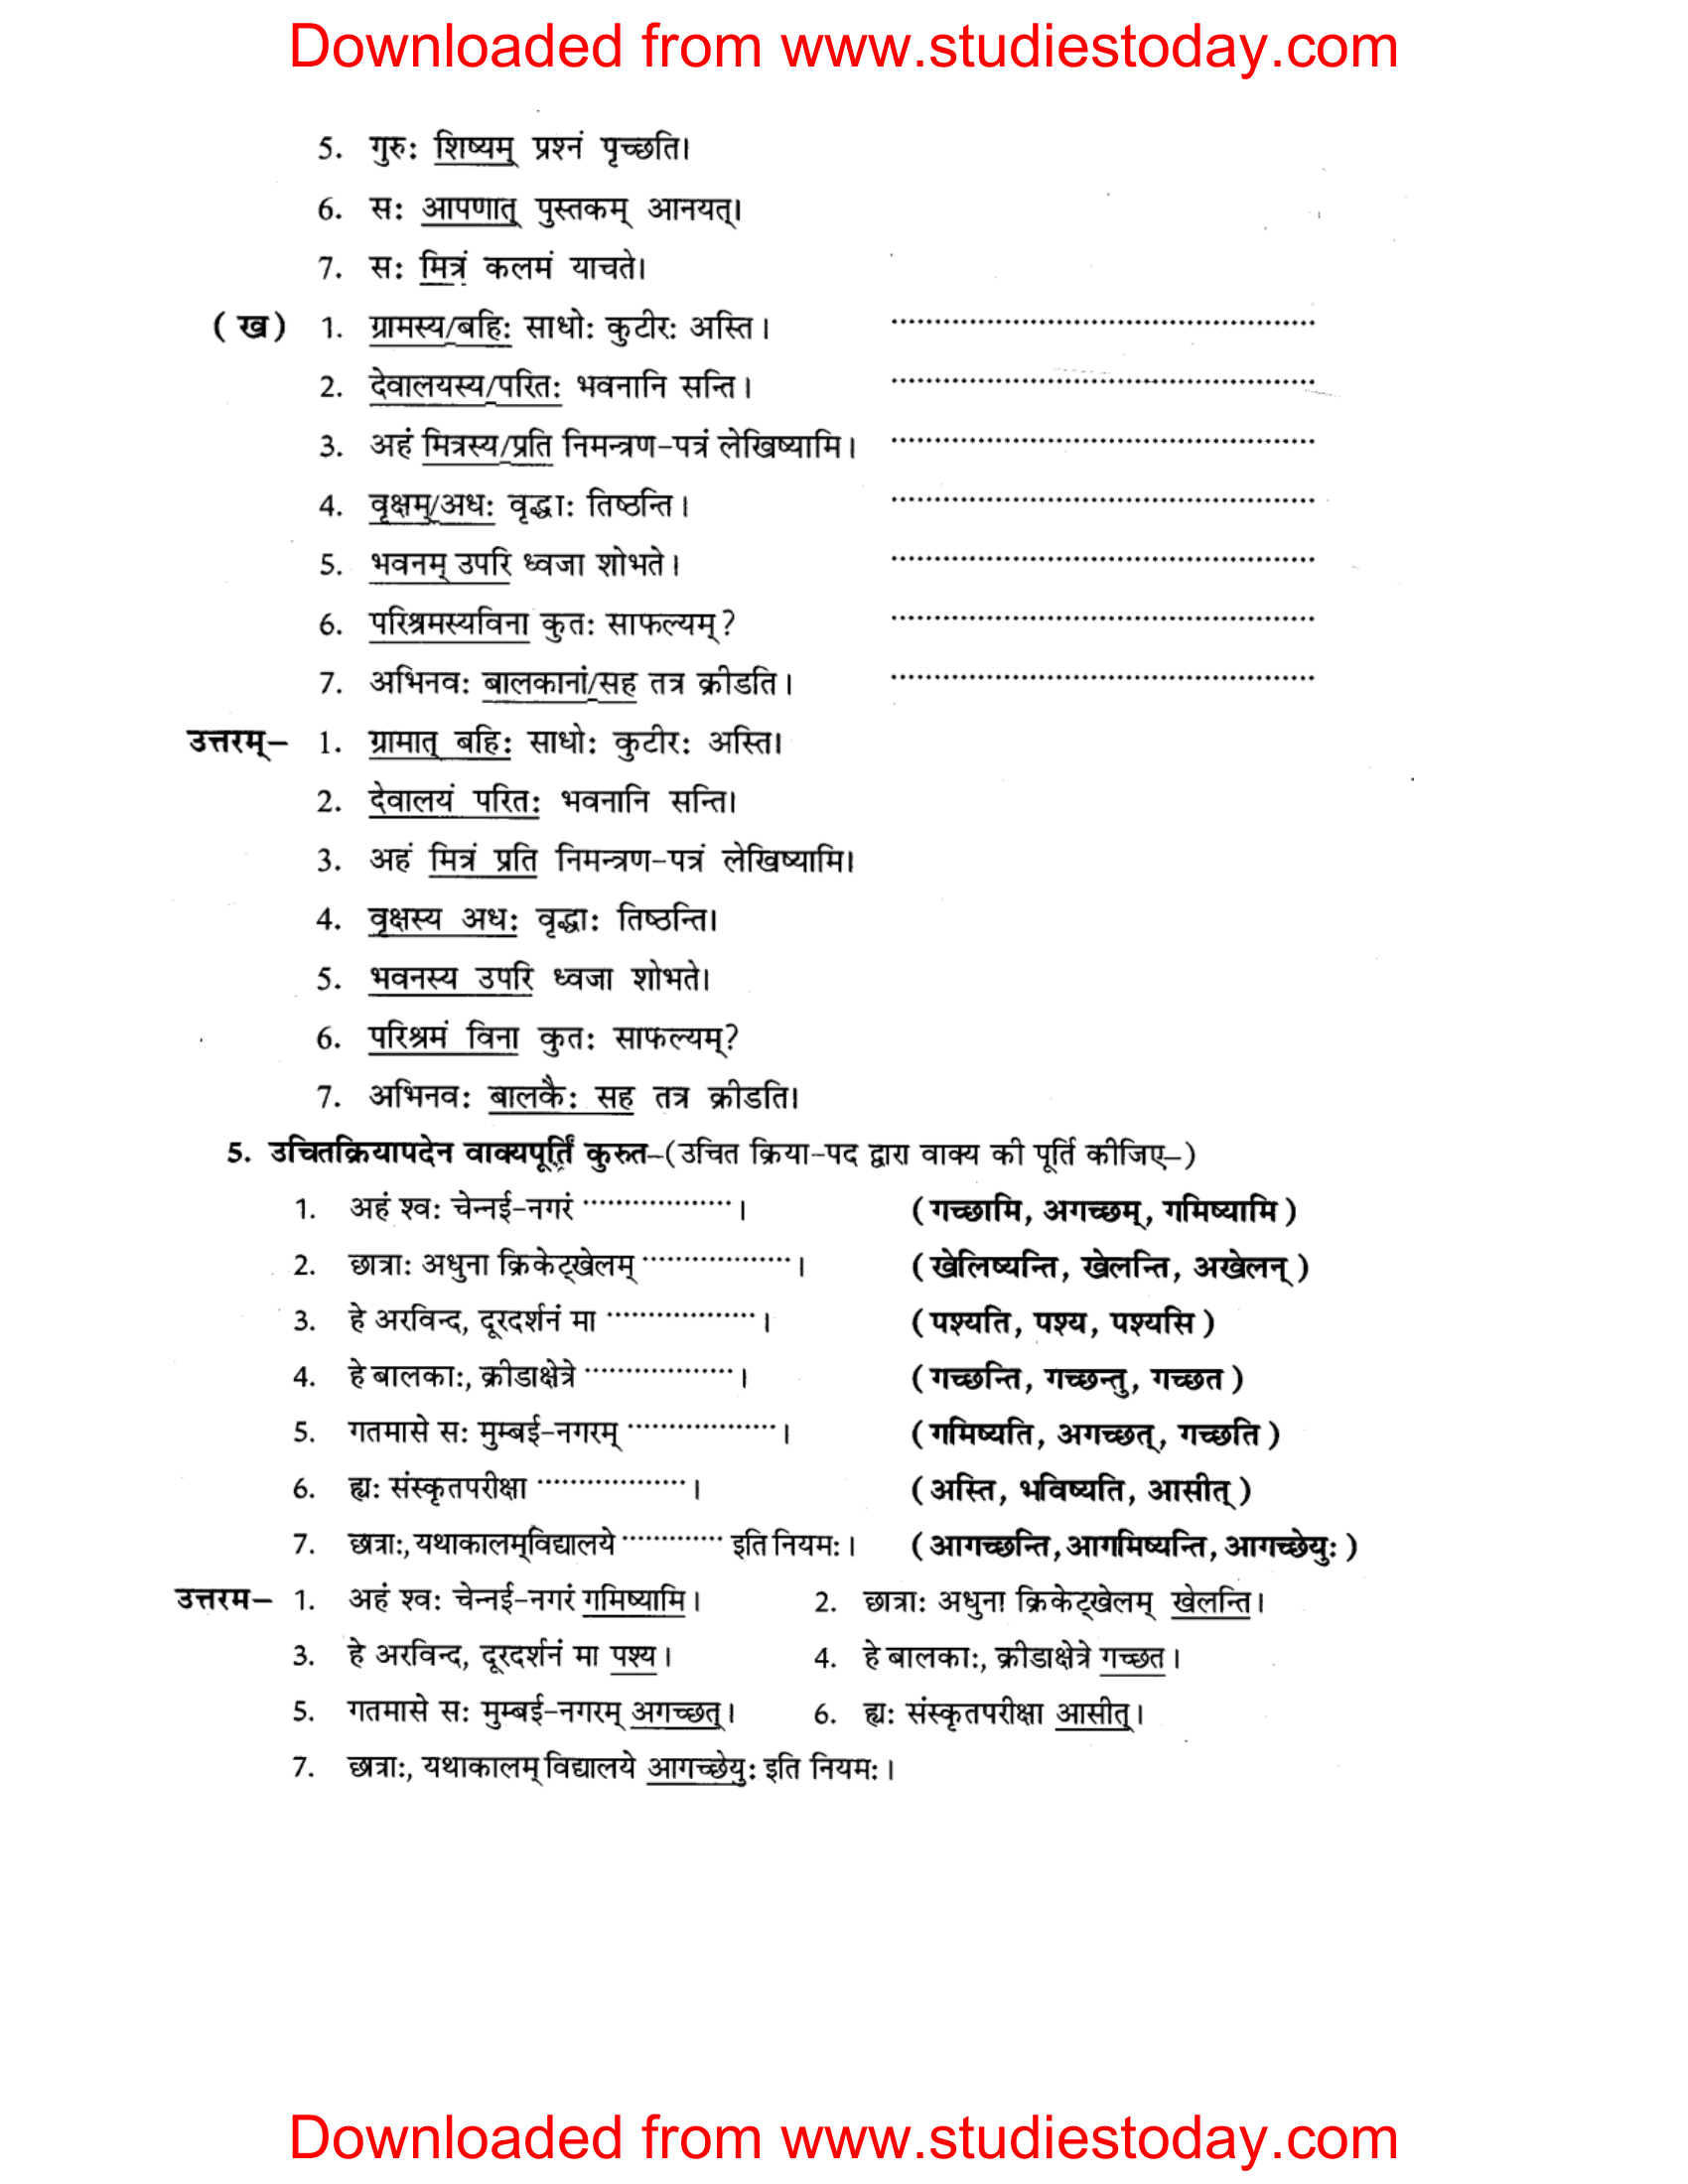 ncert-solutions-class-8-sanskrit-chapter-10-vakyarachna-sudhpryog-3